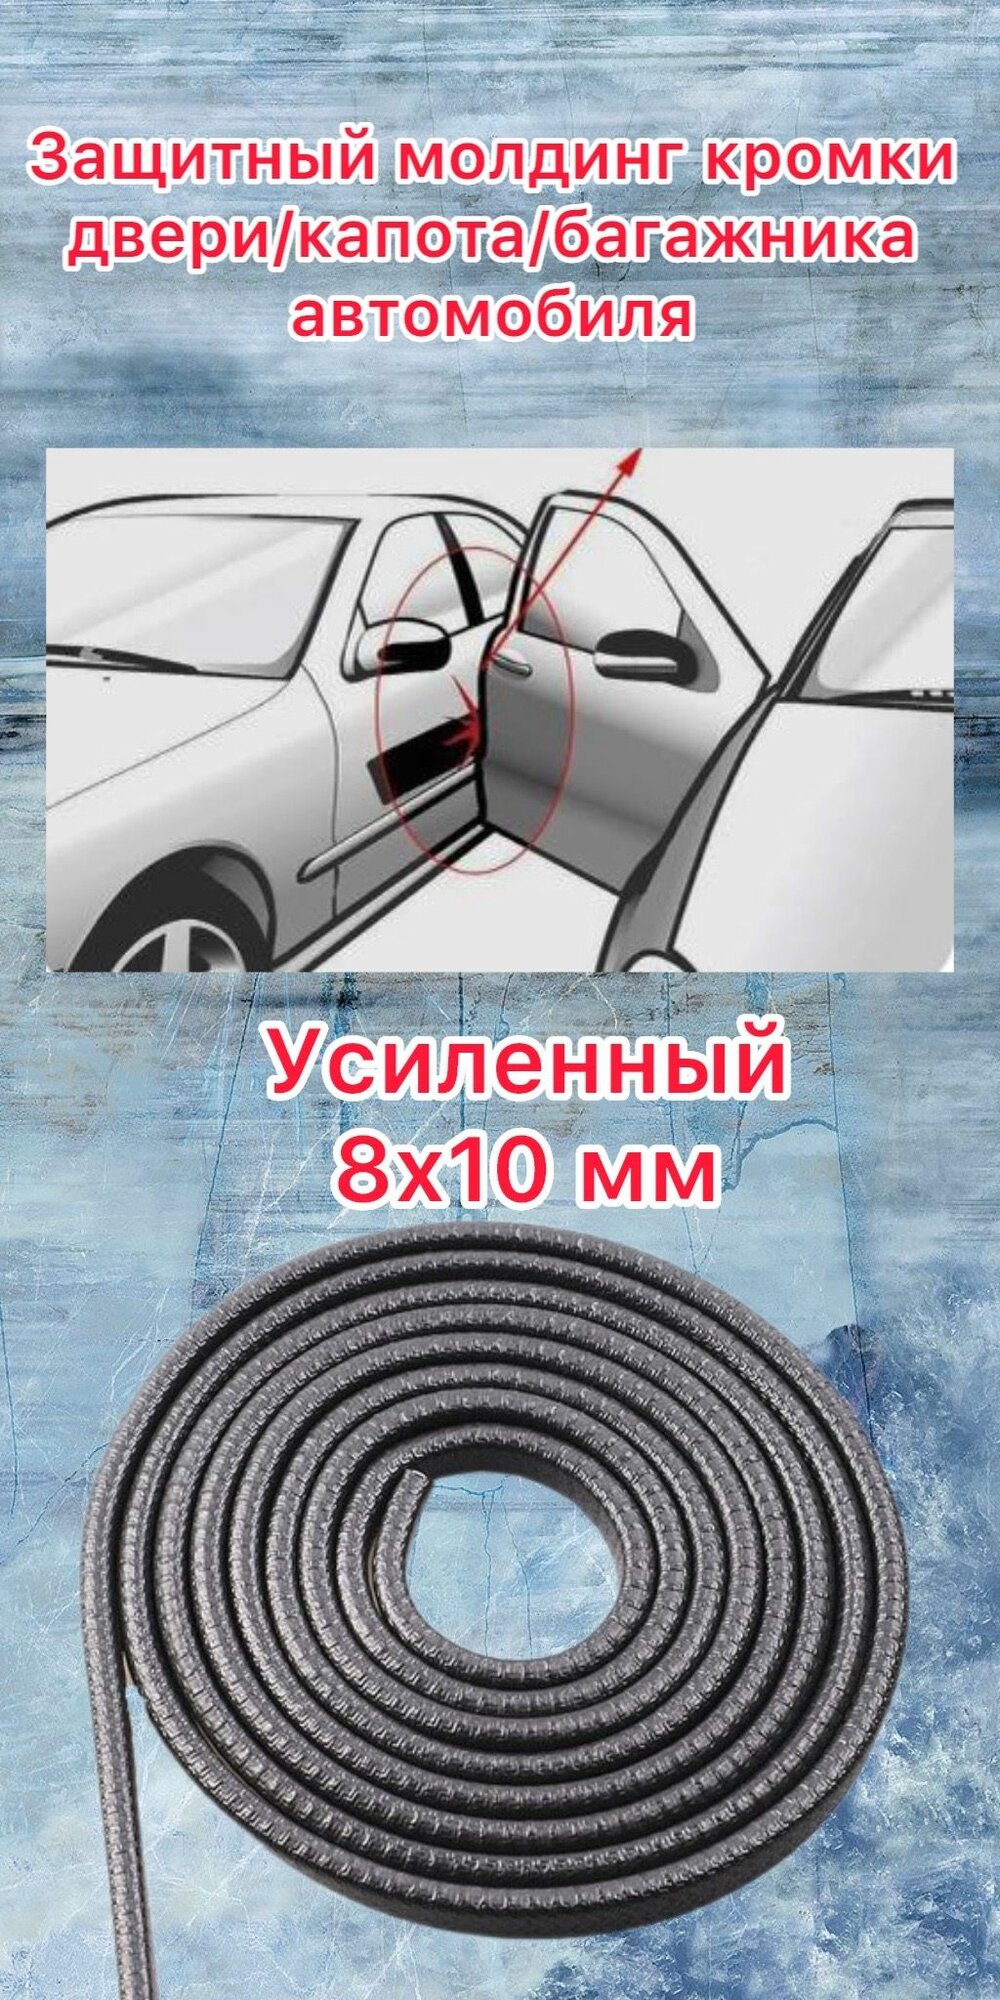 Защита кромки дверей автомобиля с металлической вставкой (черный 5 метров)